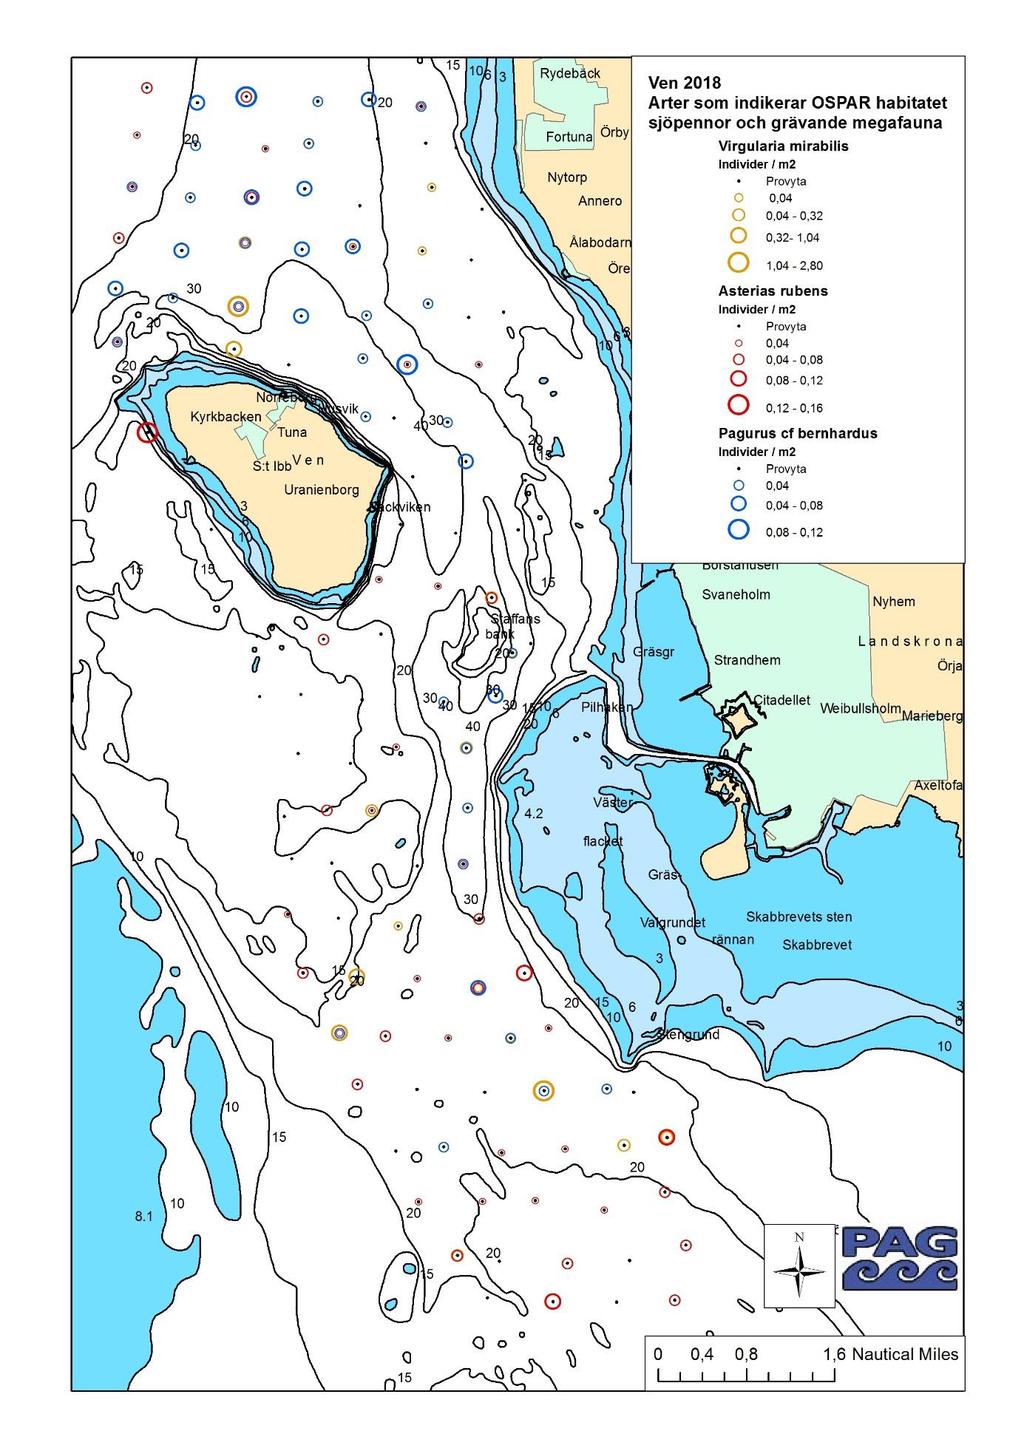 4.4.1 Sjöpennor och arter som indikerar OSPAR habitatet sjöpennor och grävande megafauna Figur 5